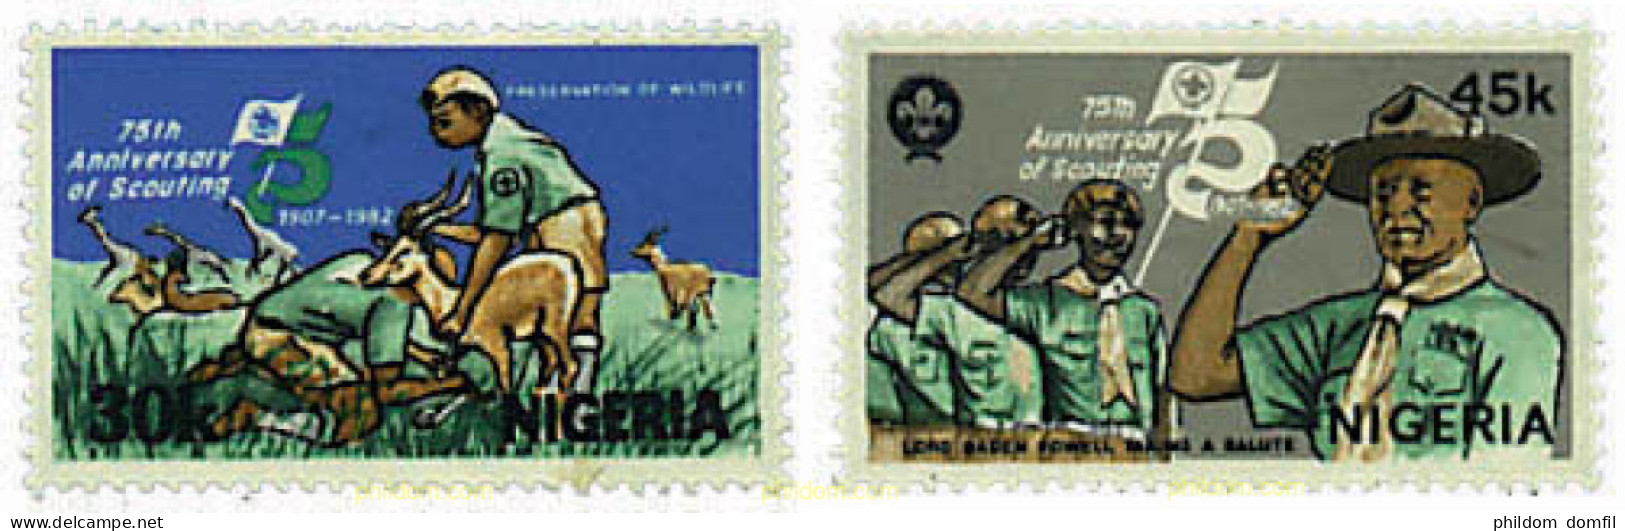 725173 HINGED NIGERIA 1982 75 ANIVERSARIO DEL ESCULTISMO - Nigeria (1961-...)